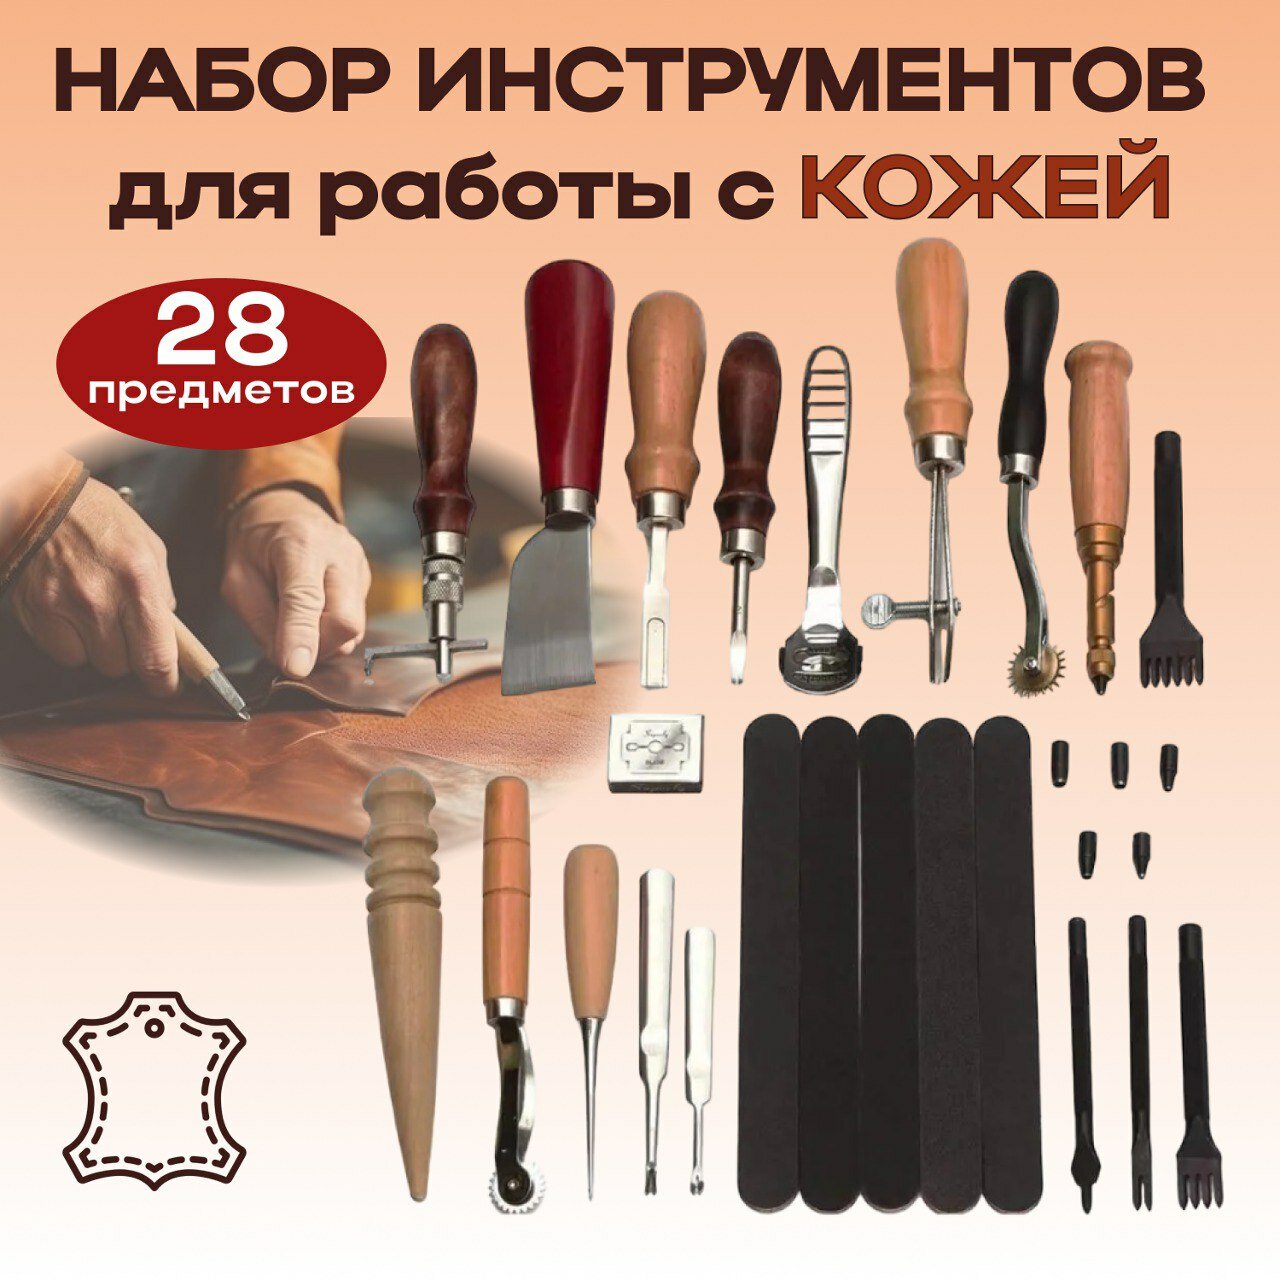 Набор иструментов для работы с кожей 28 типов предметов